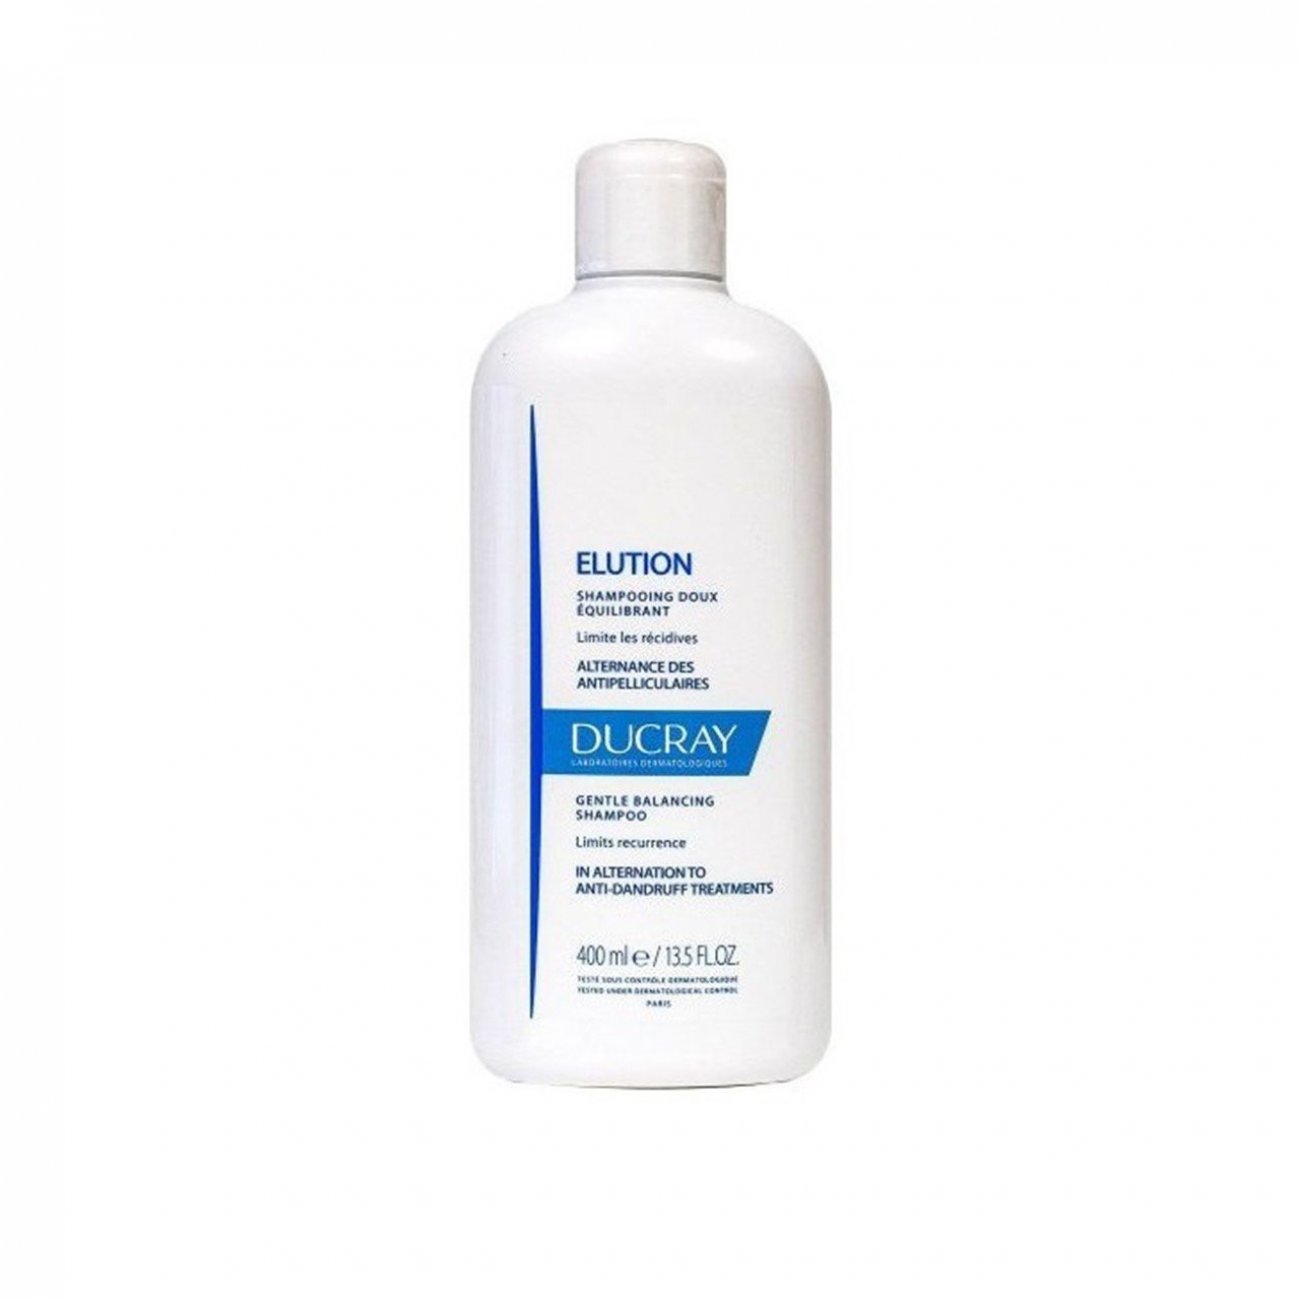 Buy Elution Gentle Balancing Shampoo USA